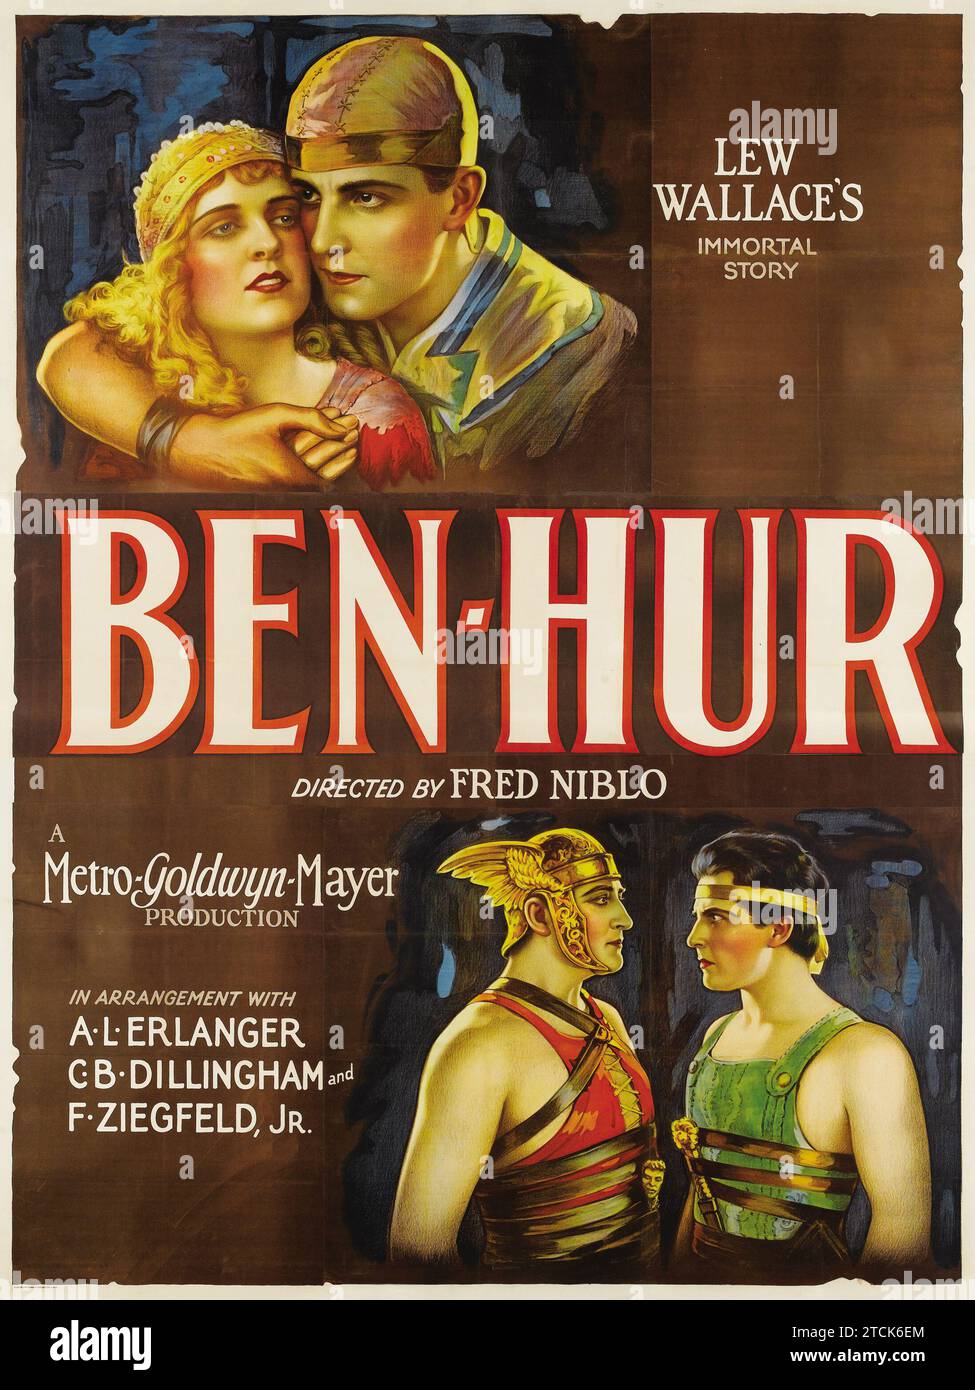 Ben-Hur (MGM, 1925). L'histoire immortelle de Lew Wallace. Affiche de vieux film feat Ramon Novarro Banque D'Images